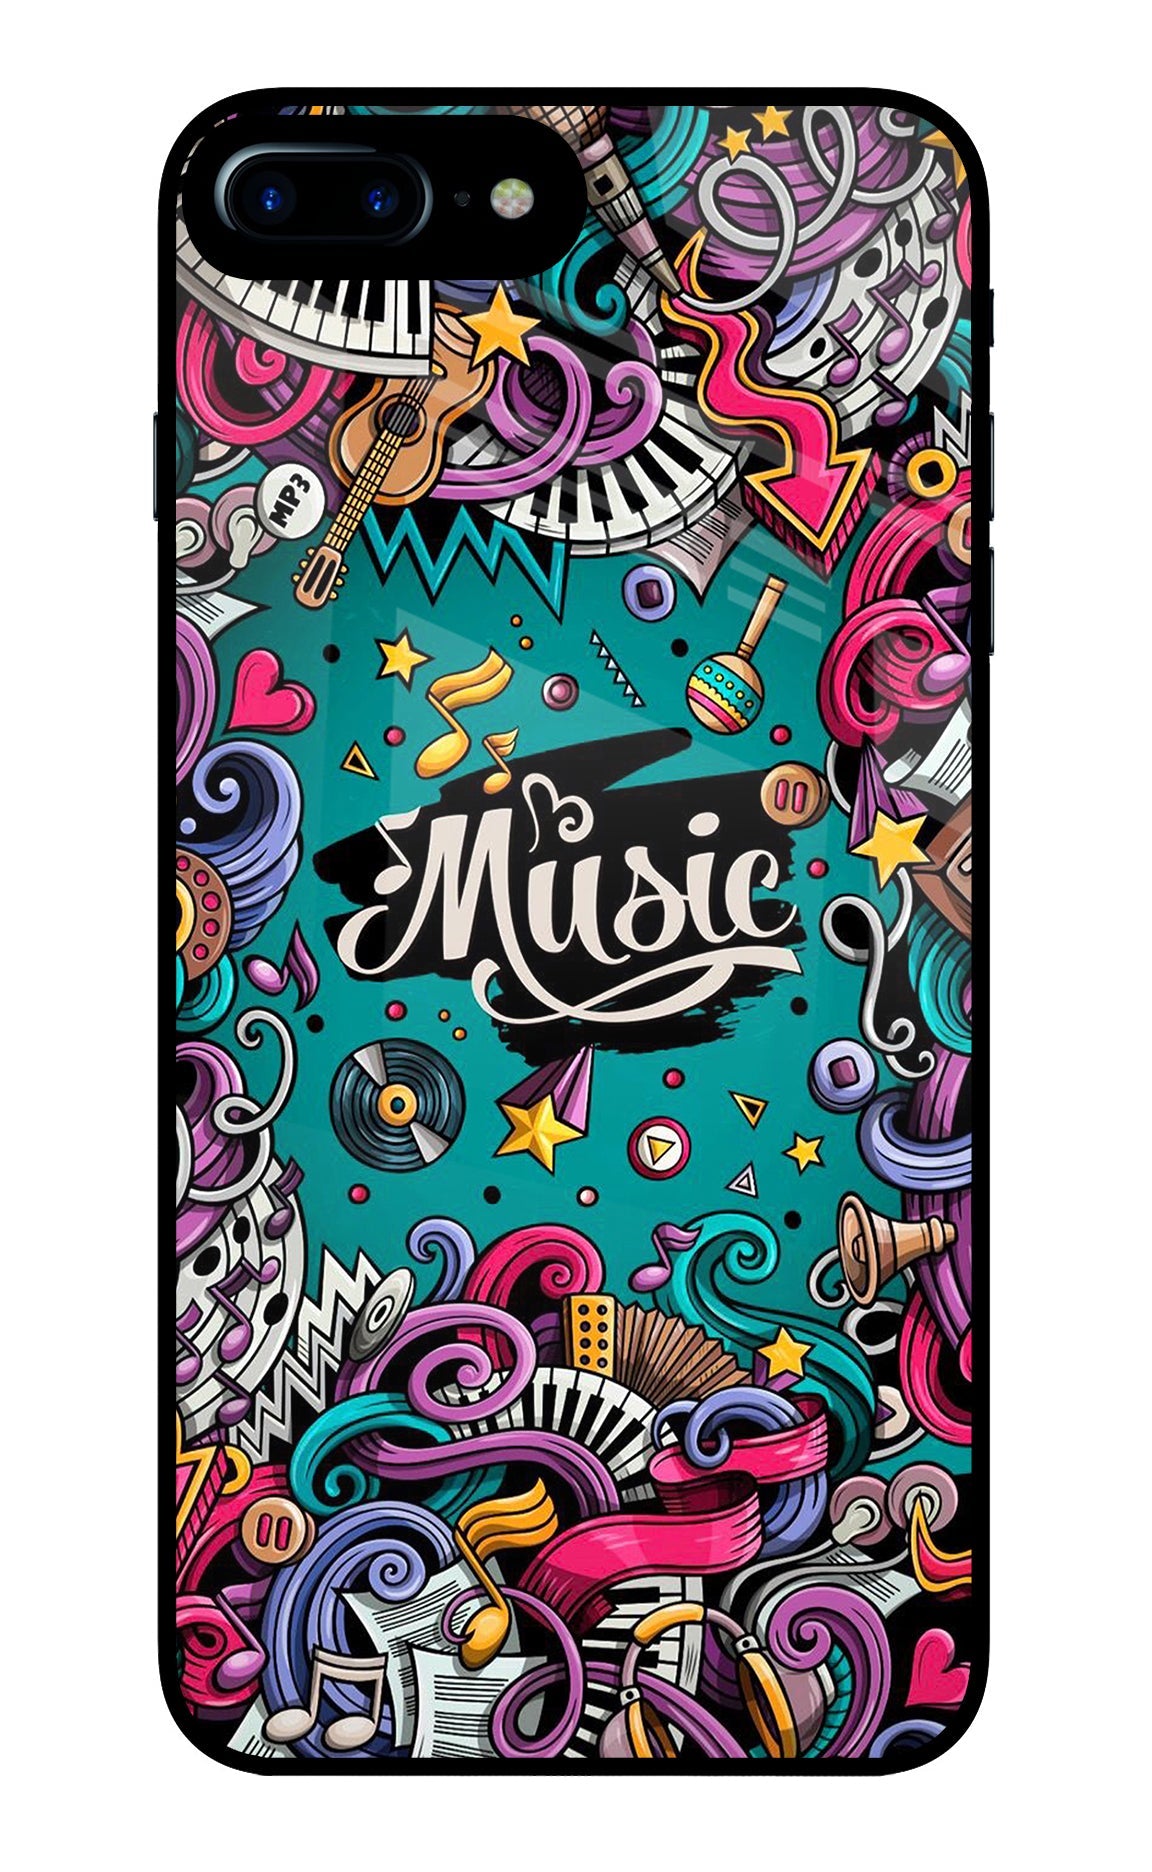 Music Graffiti iPhone 7 Plus Glass Case